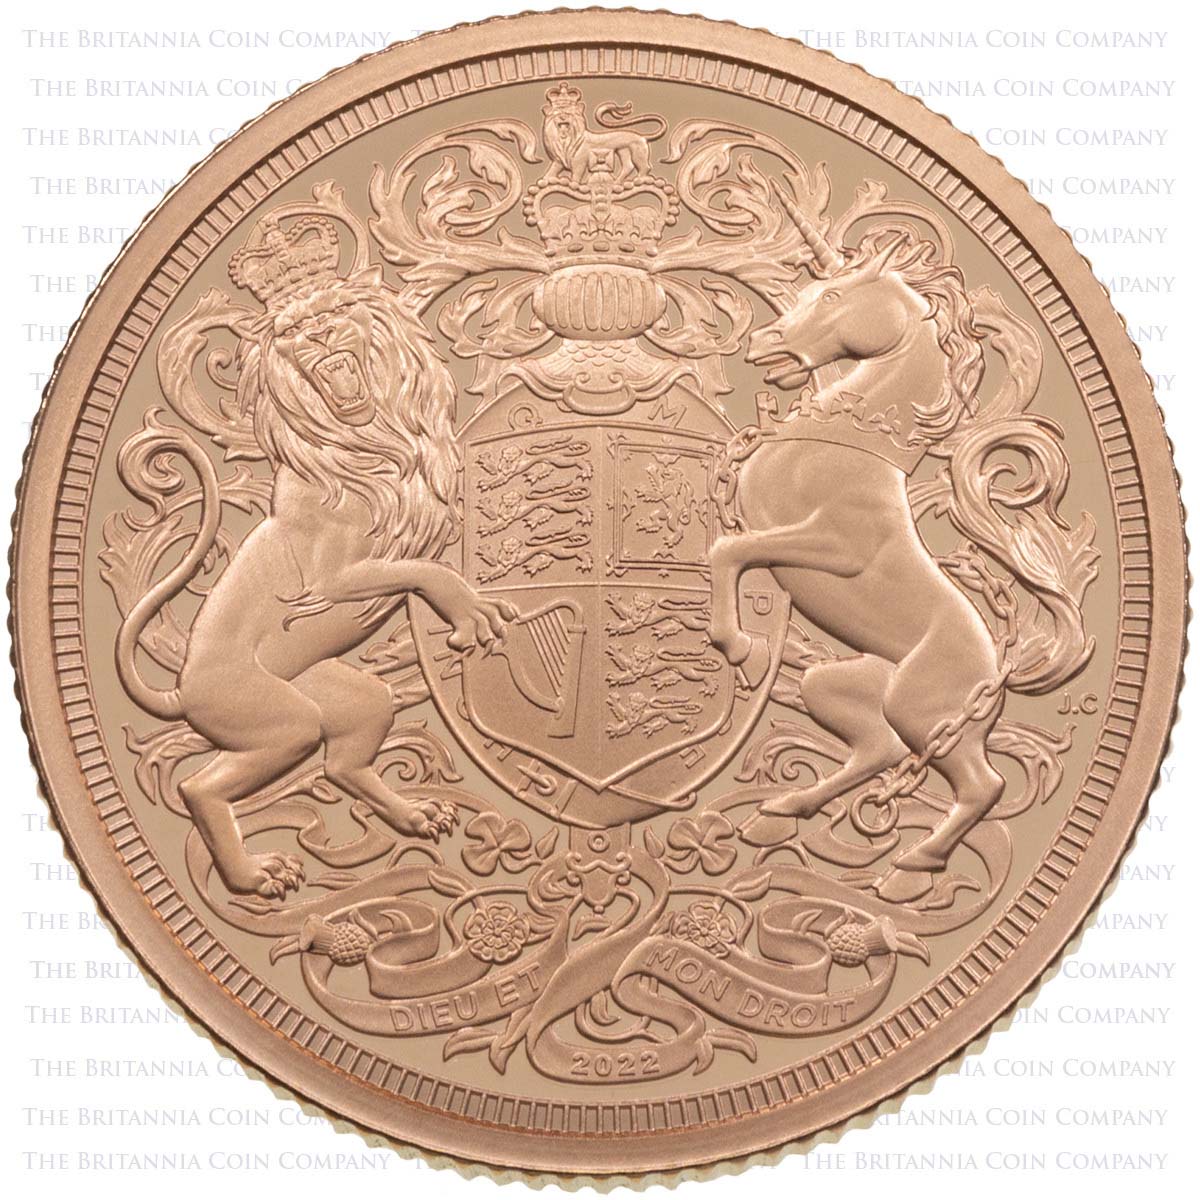 MSV22PF 2022 Charles III Piedfort Gold Proof Sovereign Queen Elizabeth II Memorial Coin Reverse